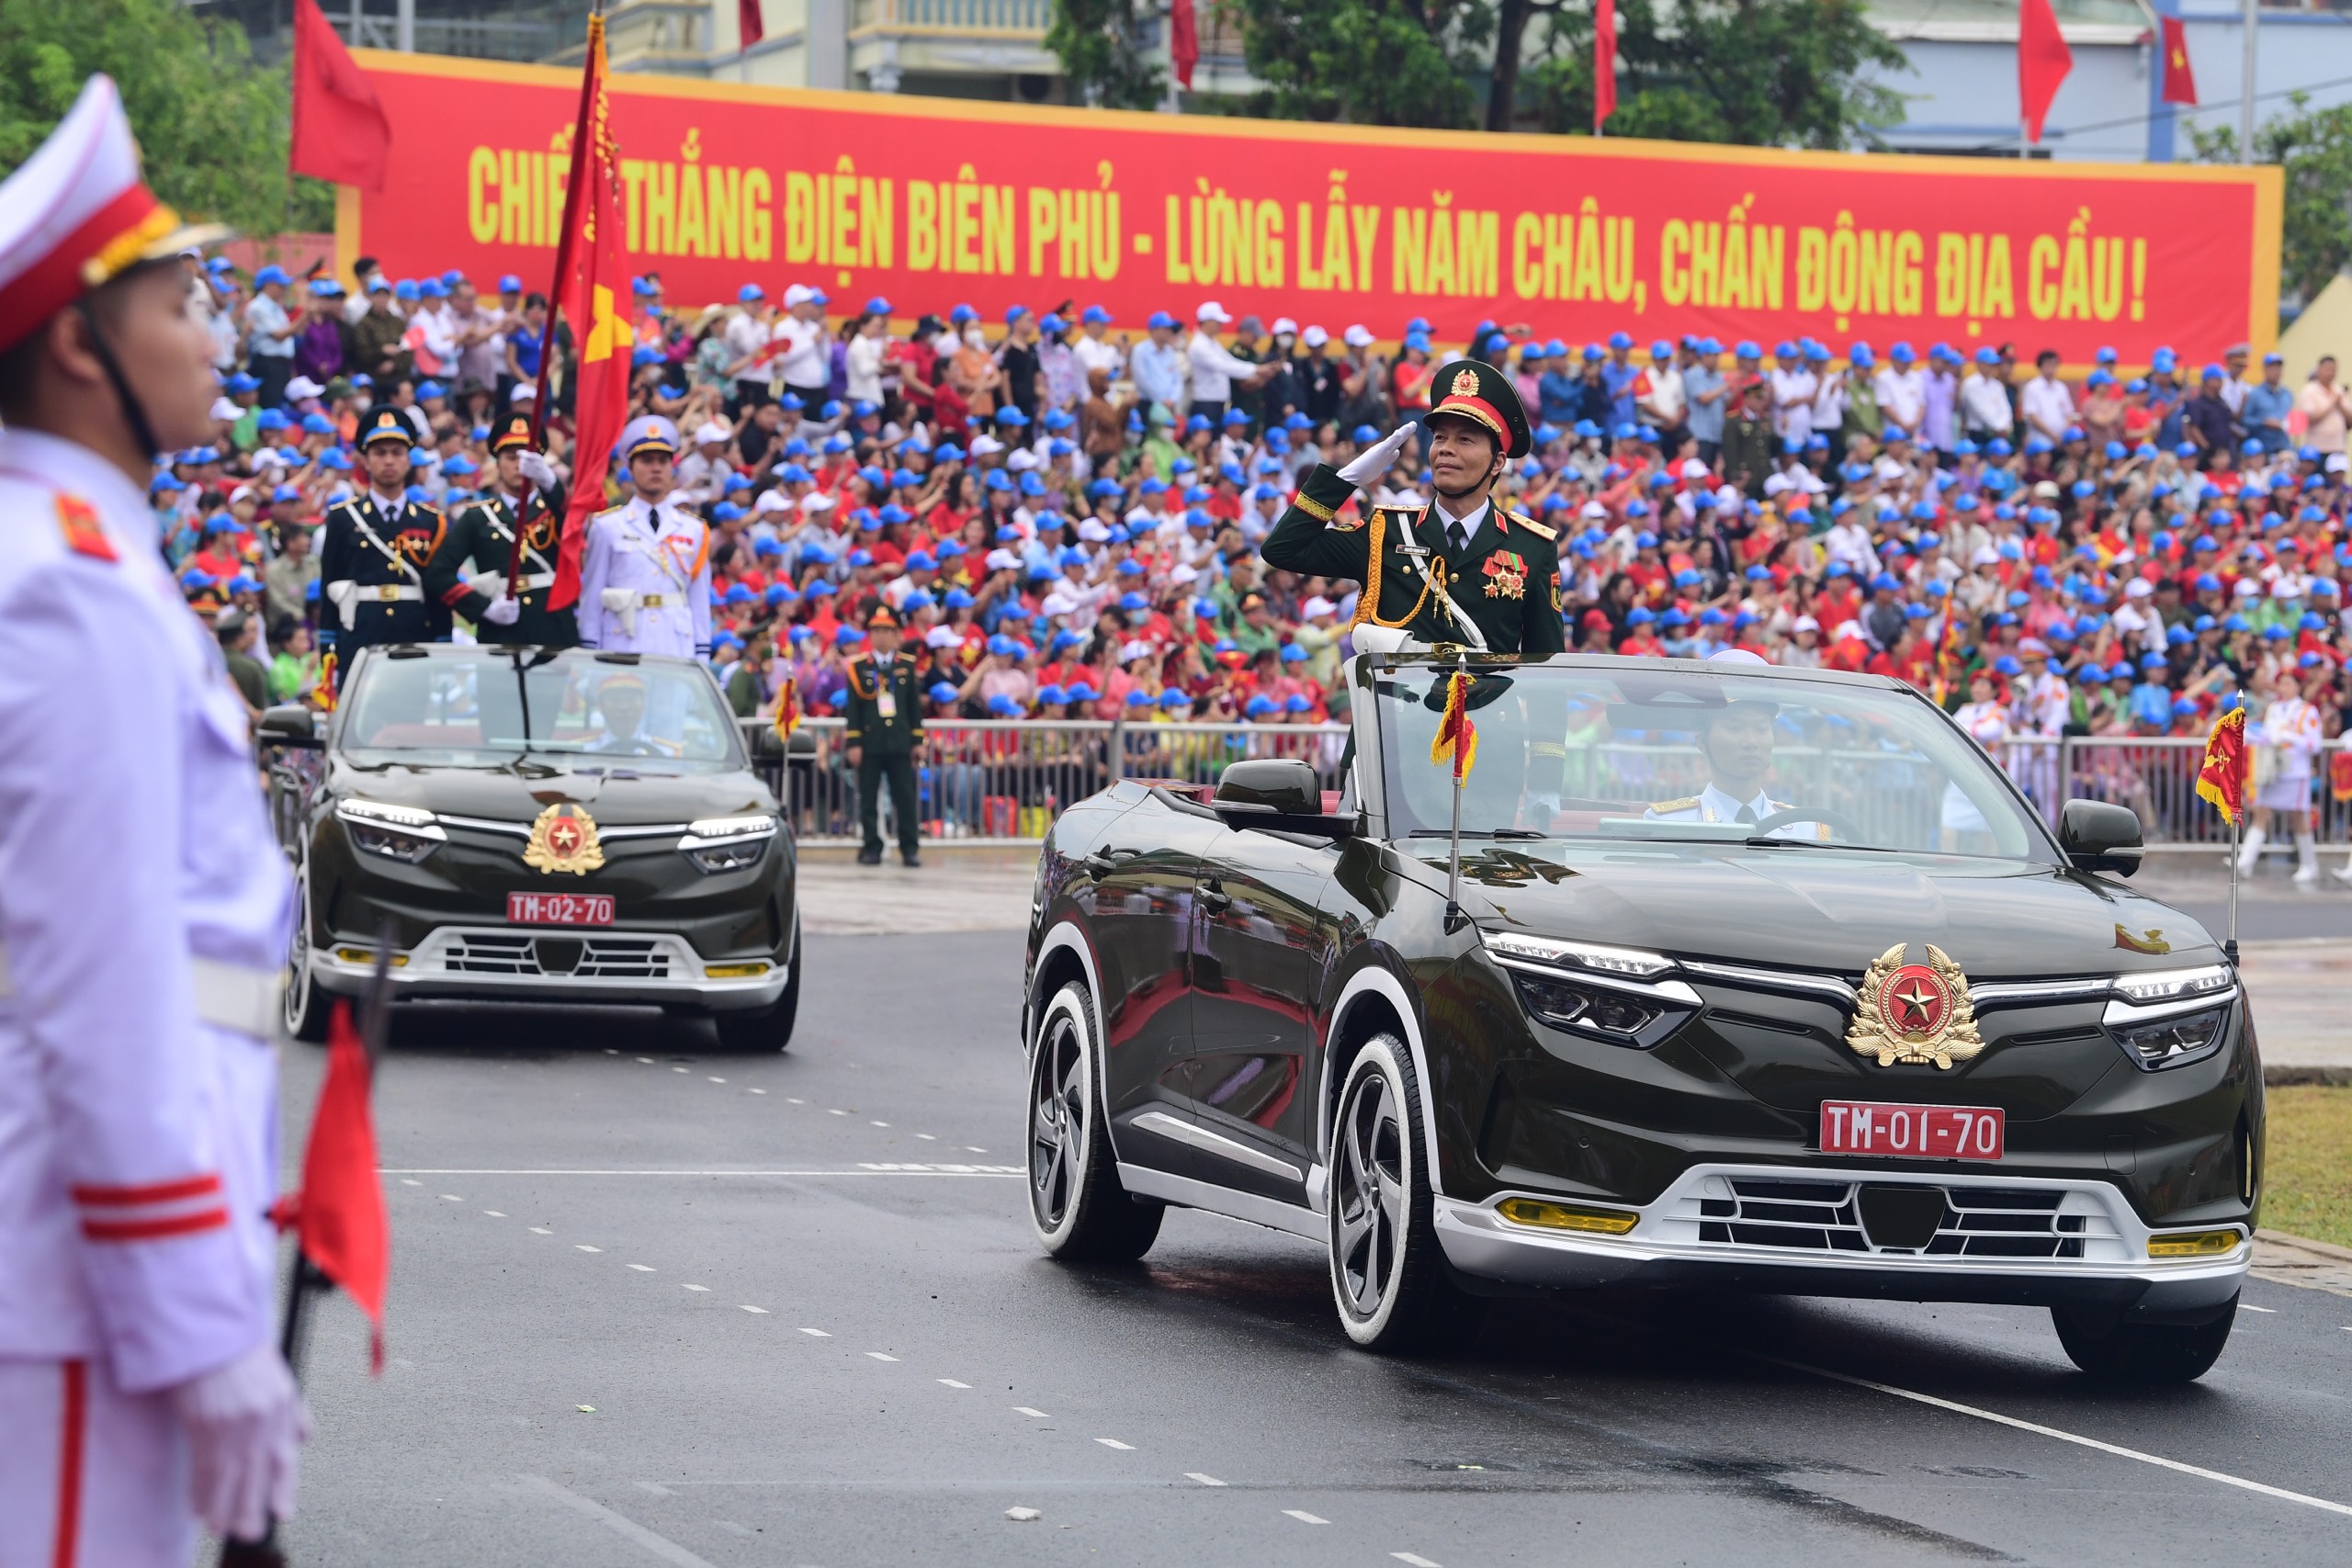 Lễ diễu binh oai hùng và đầy tự hào của 12.000 người - những hình ảnh đi vào lịch sử ở Điện Biên Phủ- Ảnh 23.